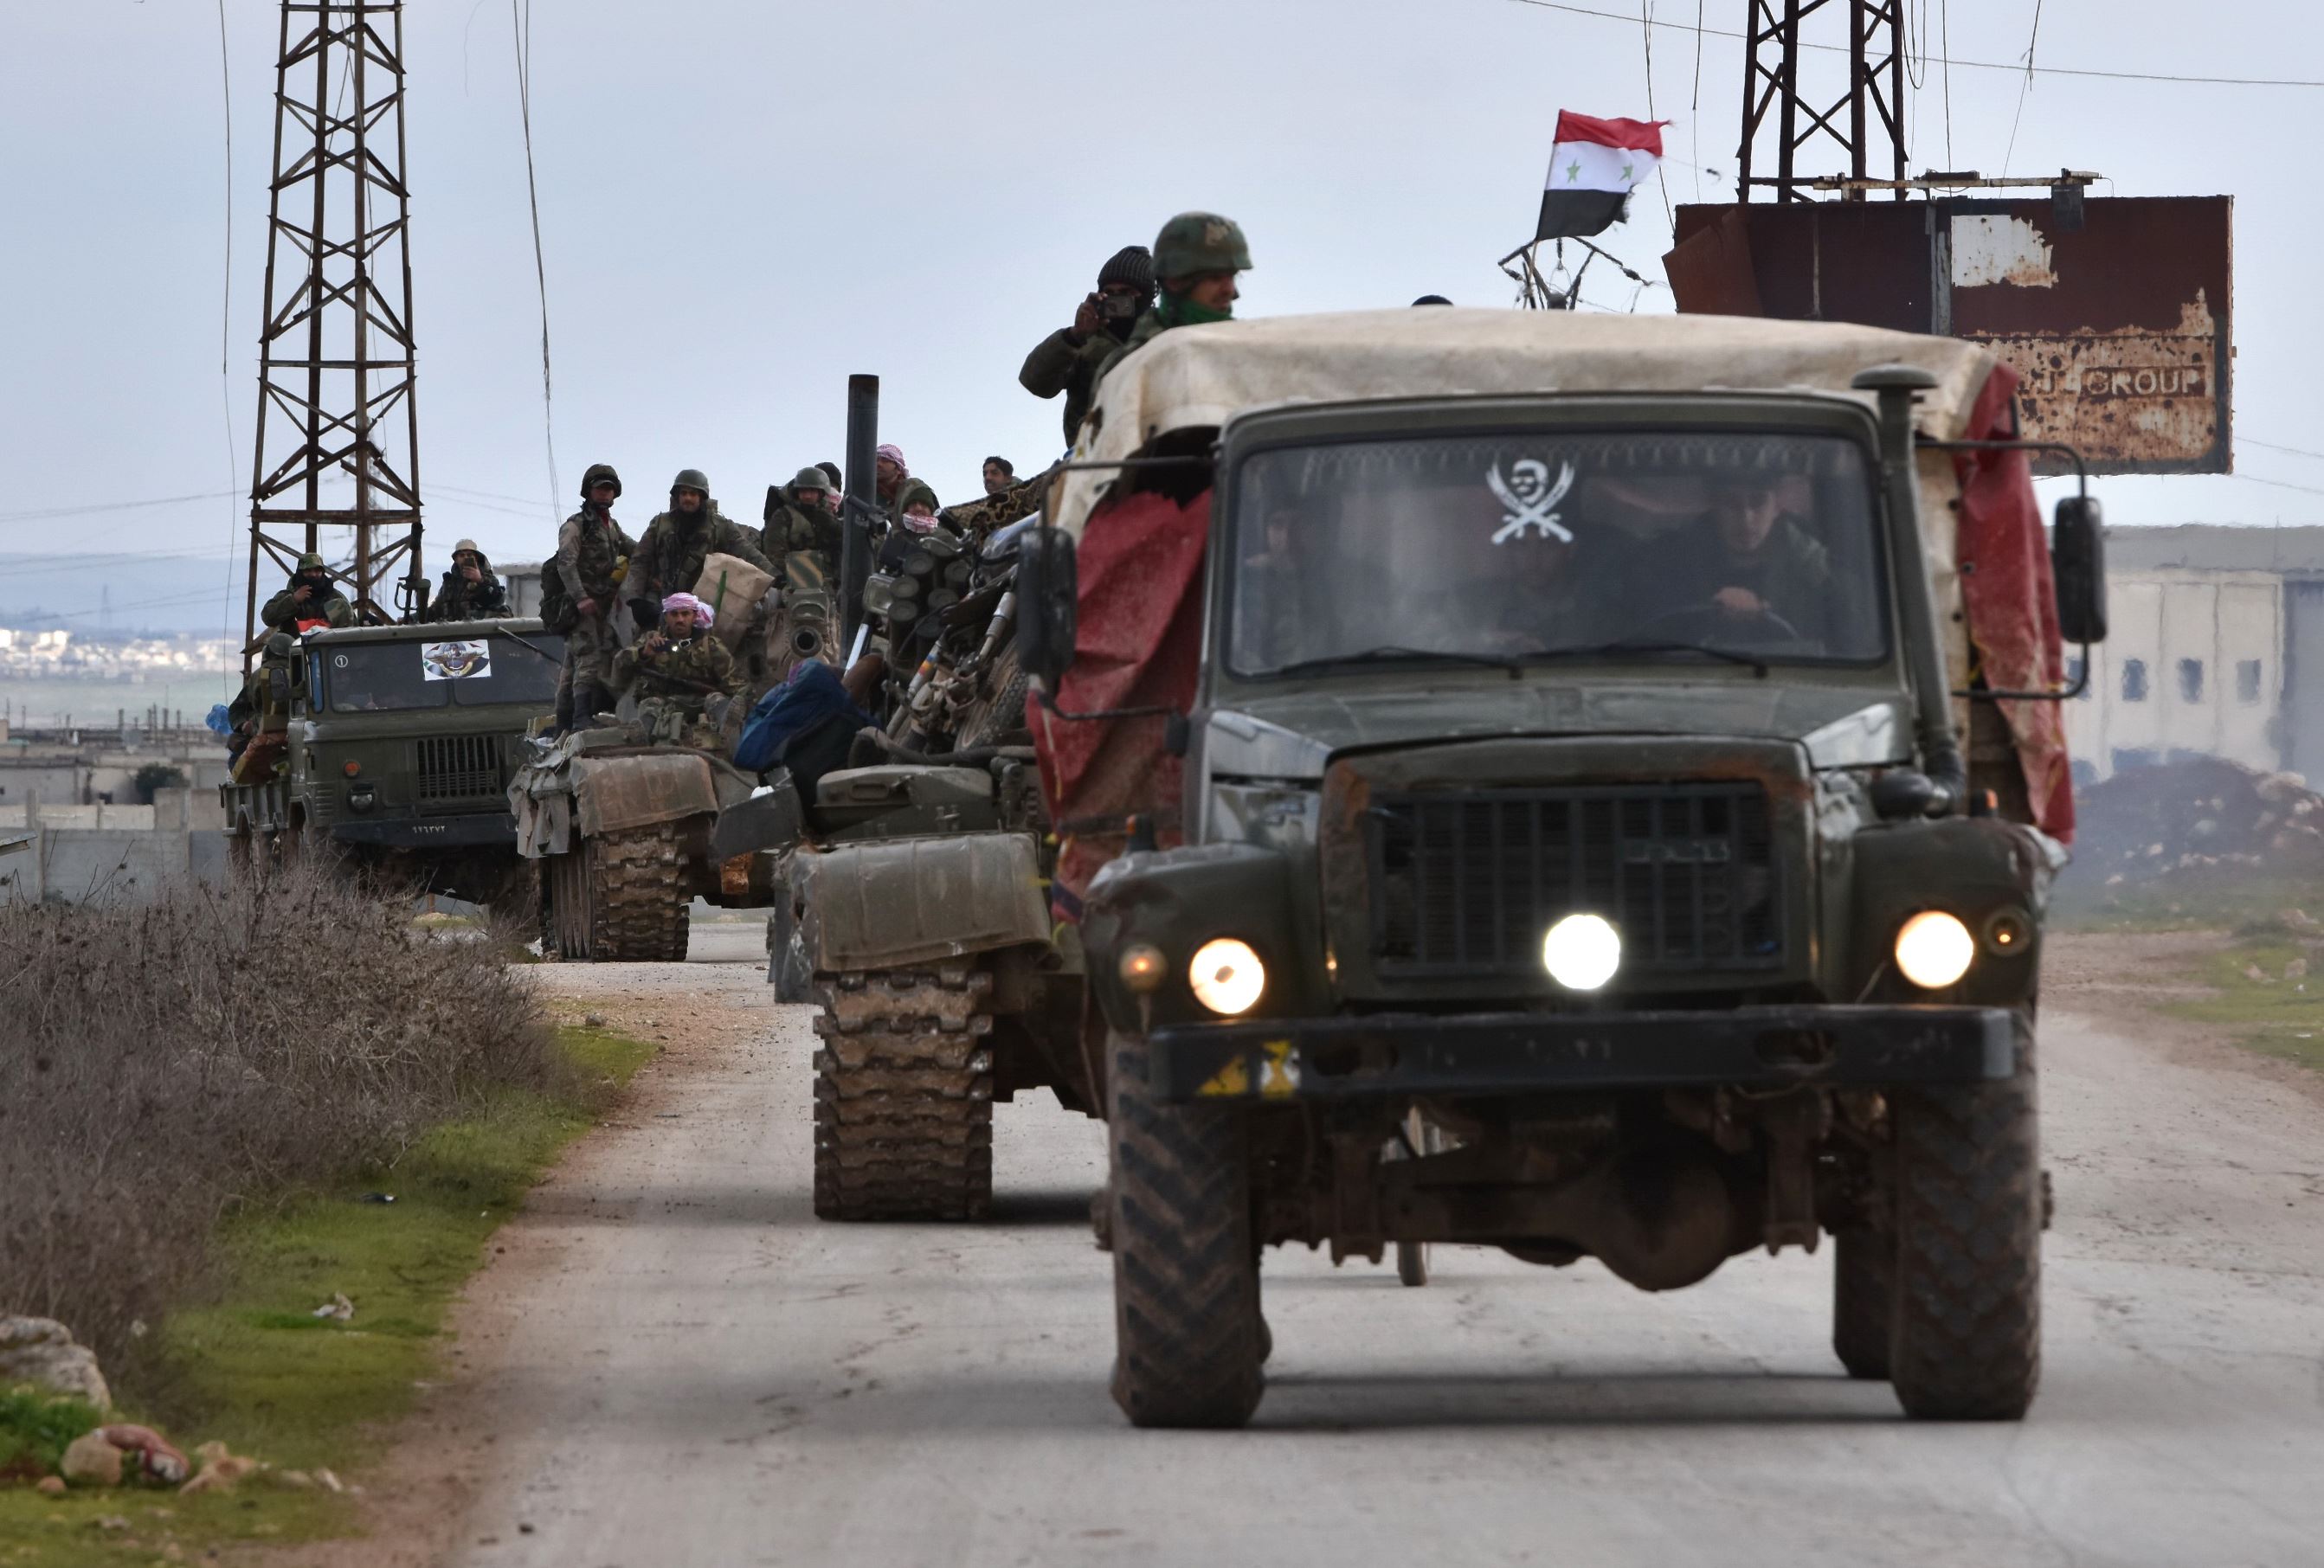 هيئة تحرير الشام على خط الصراع في الشمال السوري.. لمن الغلبة؟